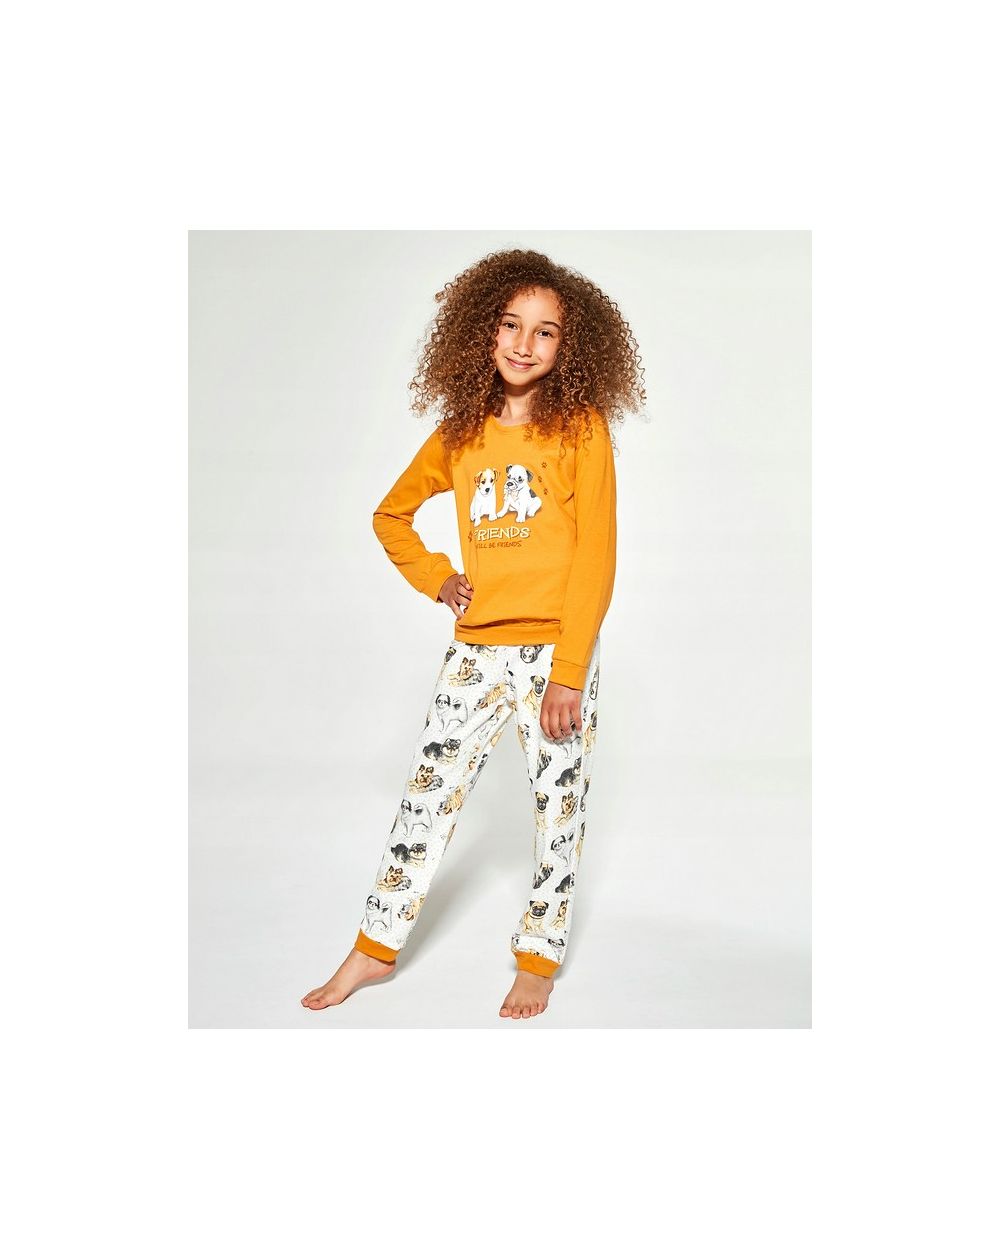 Pyjama pour chien Cornette Kids Girl 594/145, longueur 86-128